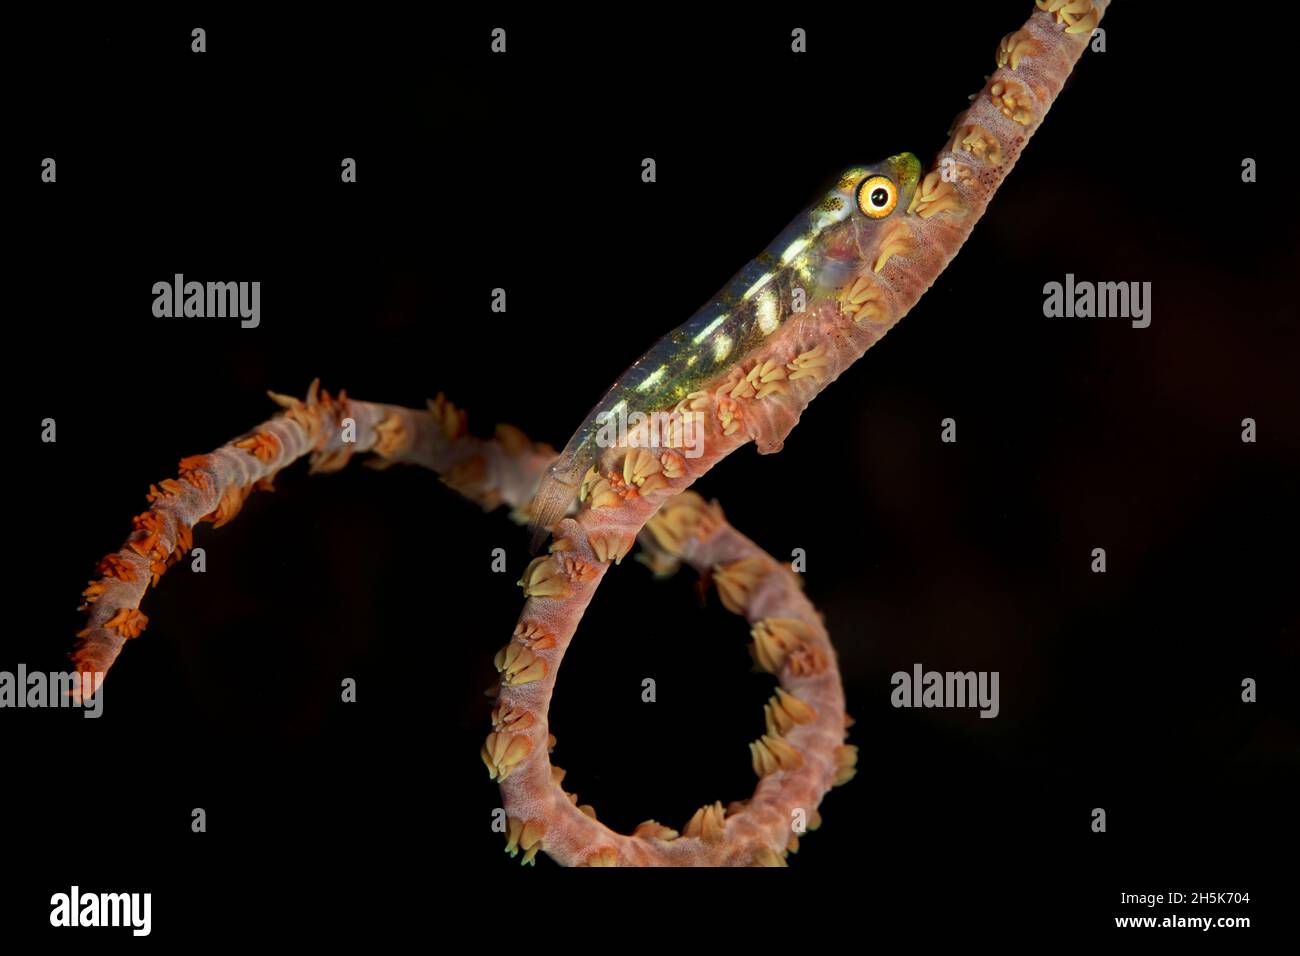 Ein winziger, 1-Zoll-Zwergfisch (Gobiidae) sitzt auf einer spiralförmigen Drahtkoralle (Cirrhipathes) mit schwarzem Hintergrund; Maui, Hawaii, Vereinigte Staaten von Amerika Stockfoto